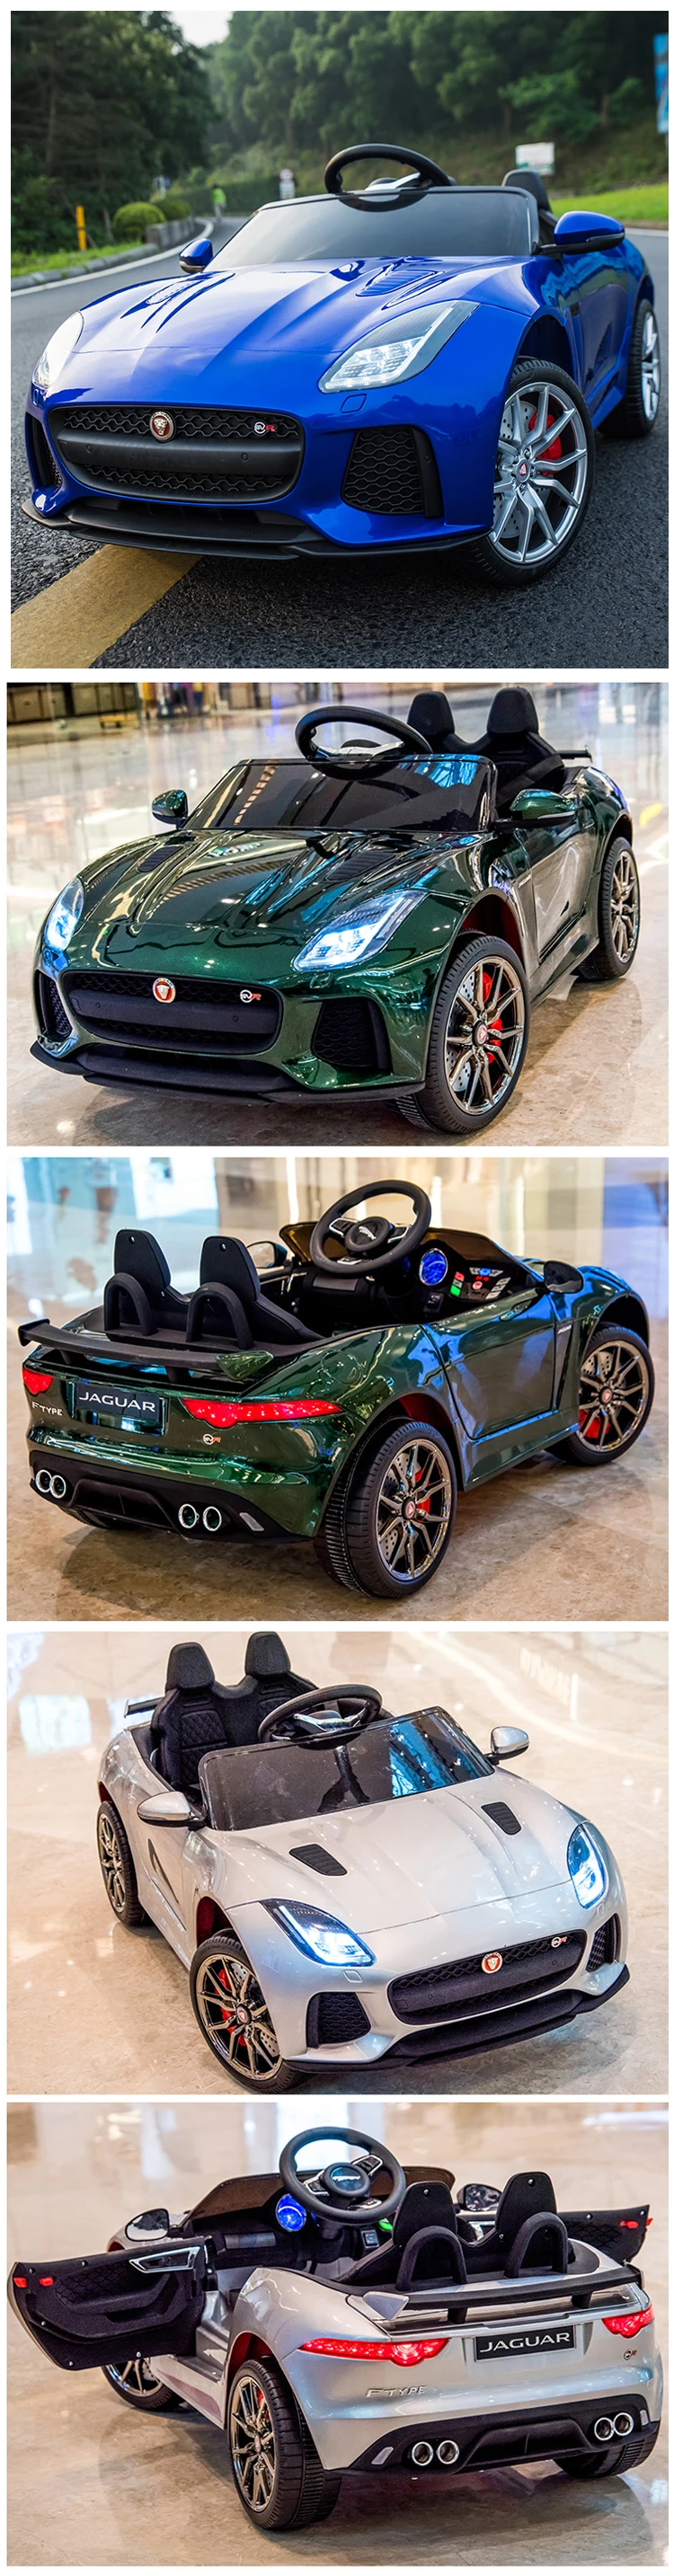 jaguar children's electric car